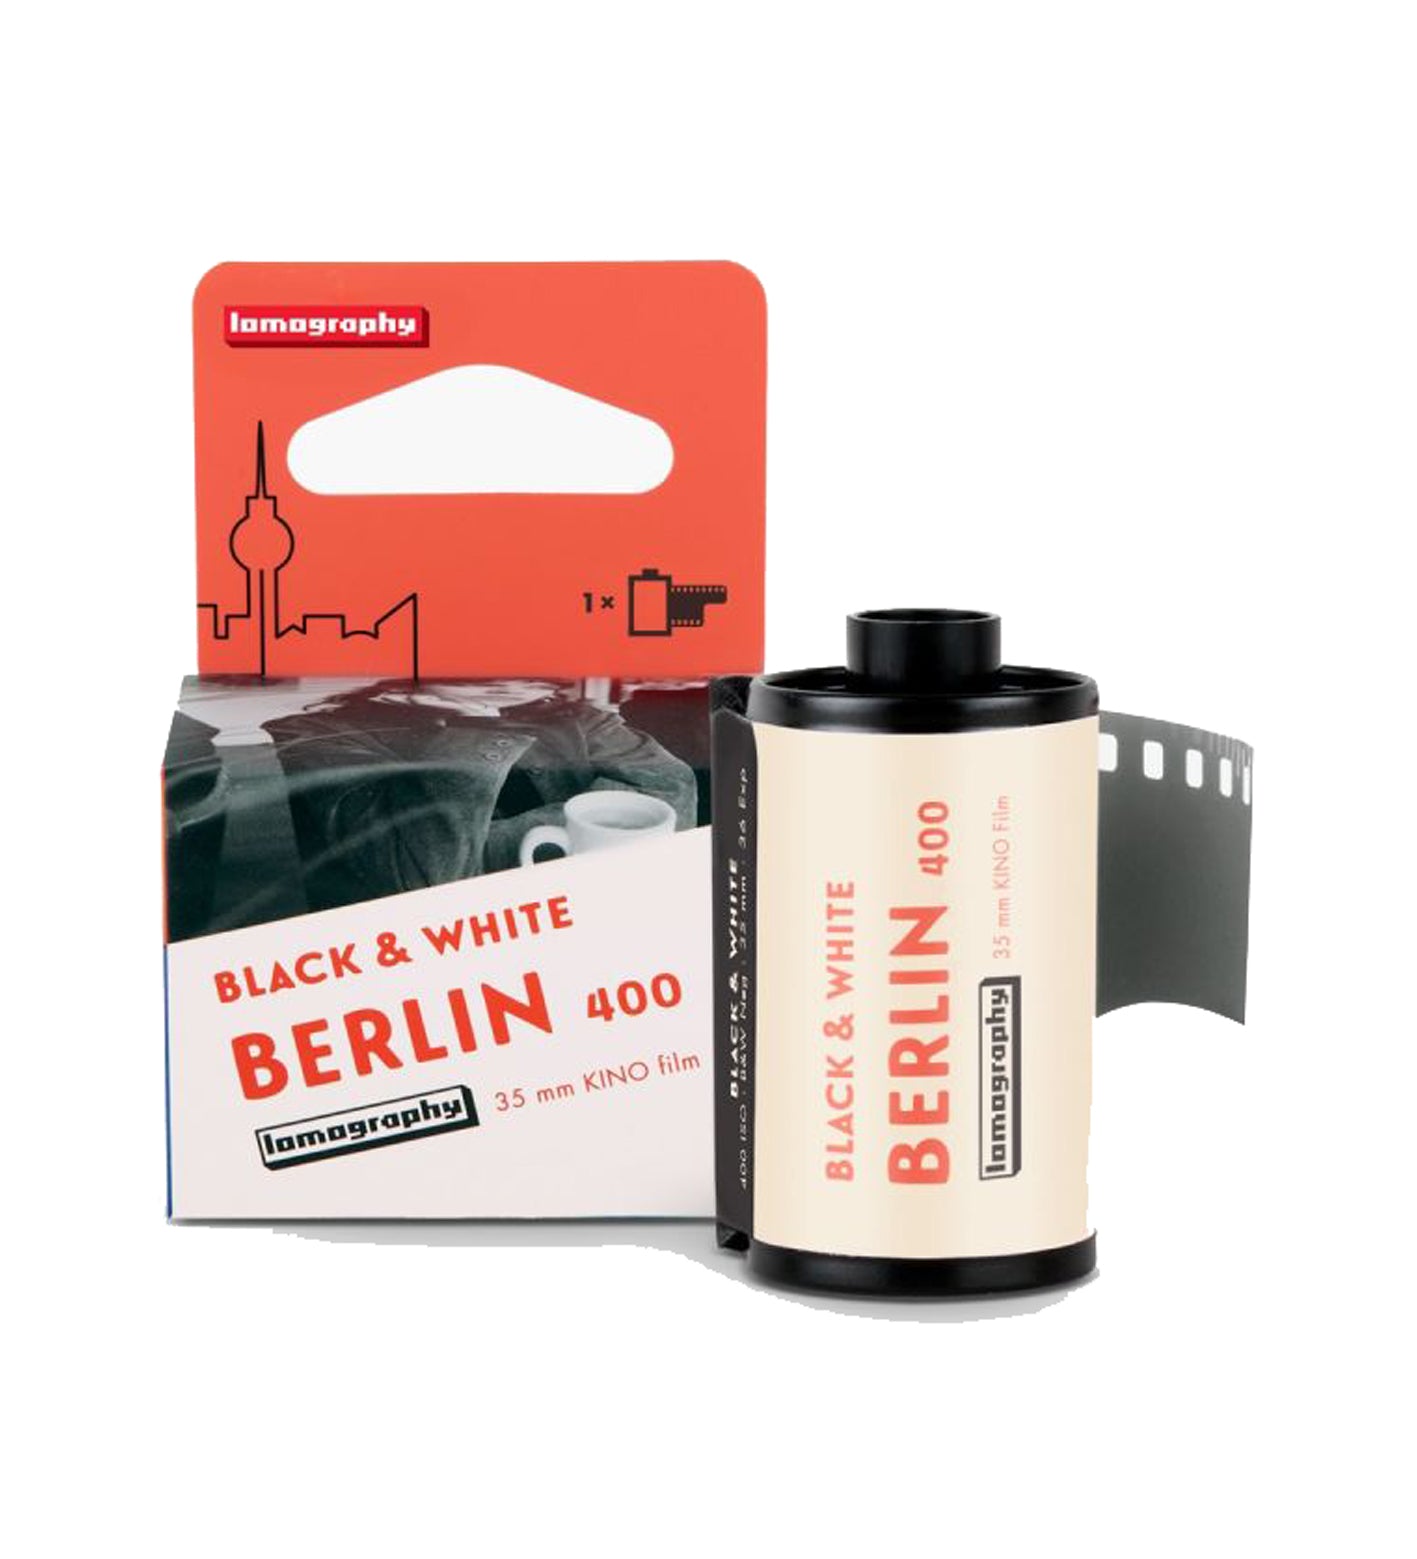 Lomography Berlin Kino 400 35mm Film 36 Exposures (£8.90 incl VAT)